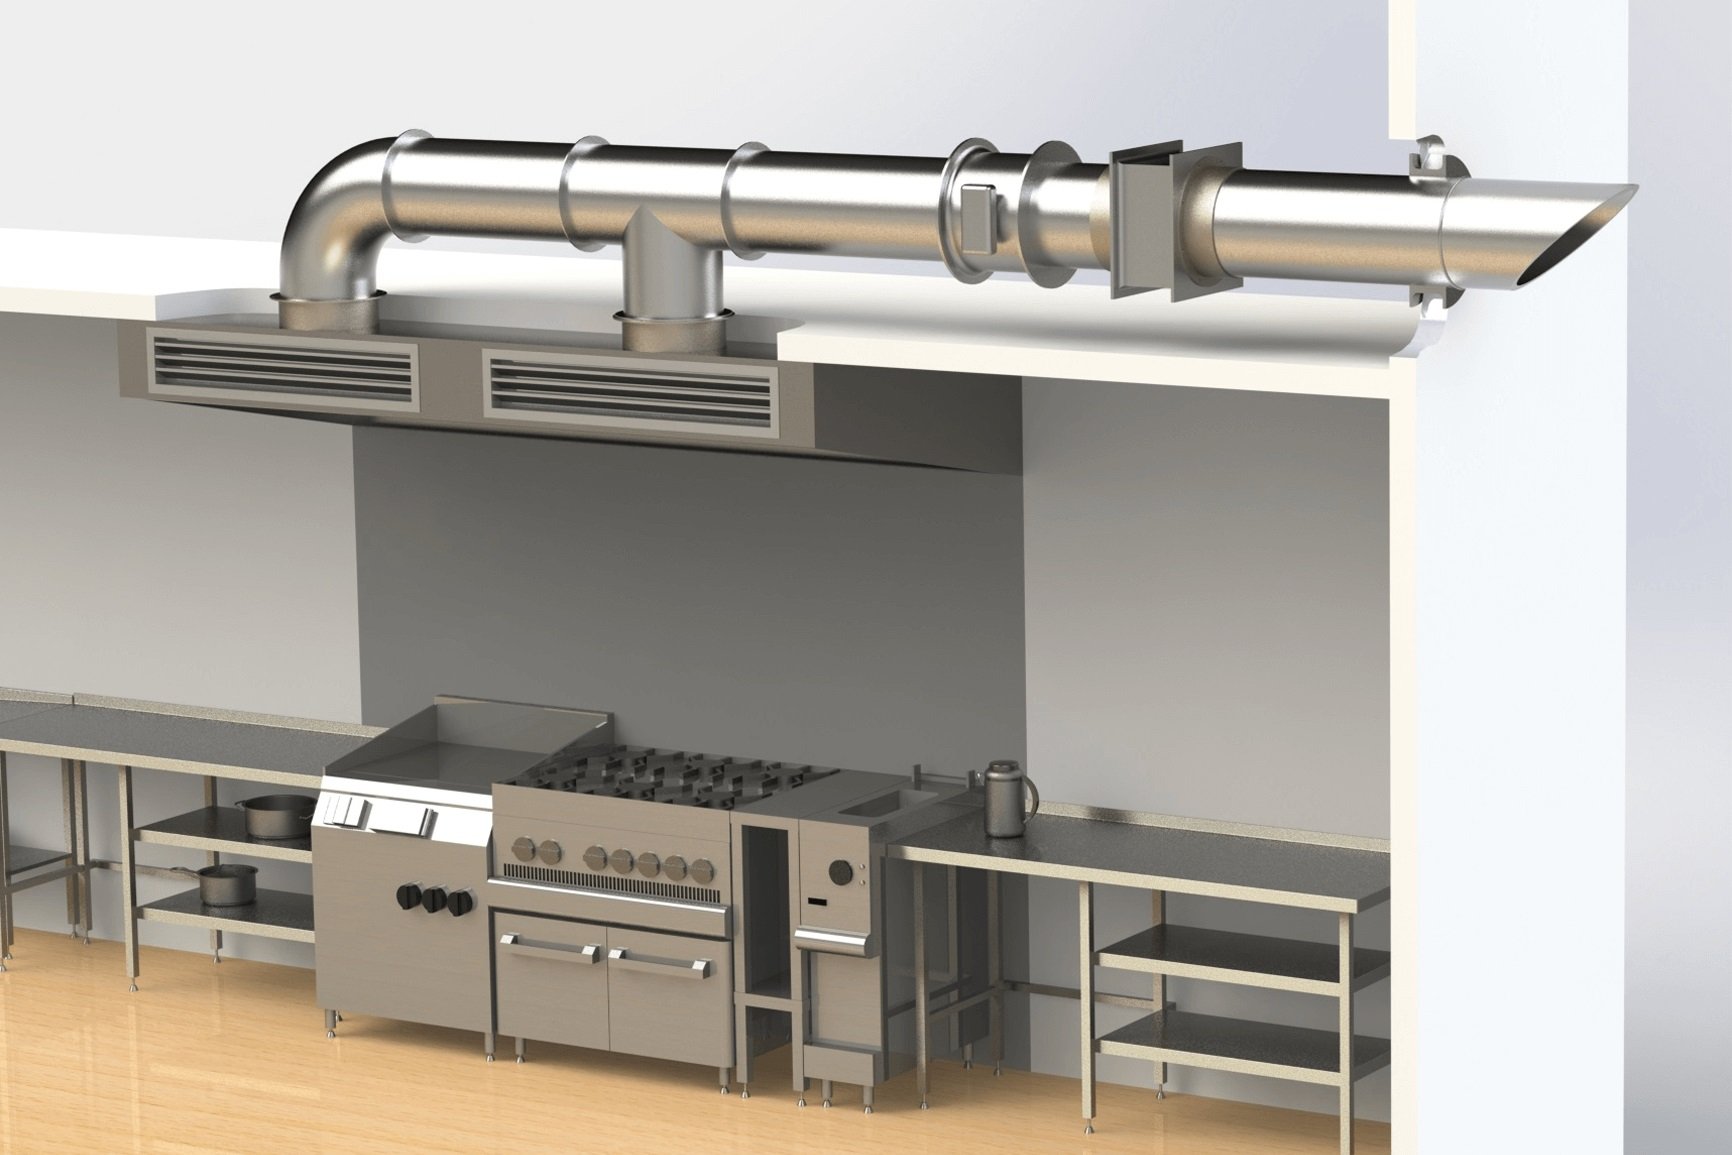 Естественная вытяжка на кухне. Система вентиляции для вытяжки. Вытяжная вентиляция для кухни. Приточно-вытяжная вентиляция на кухне. Приточная вентиляция на кухне.